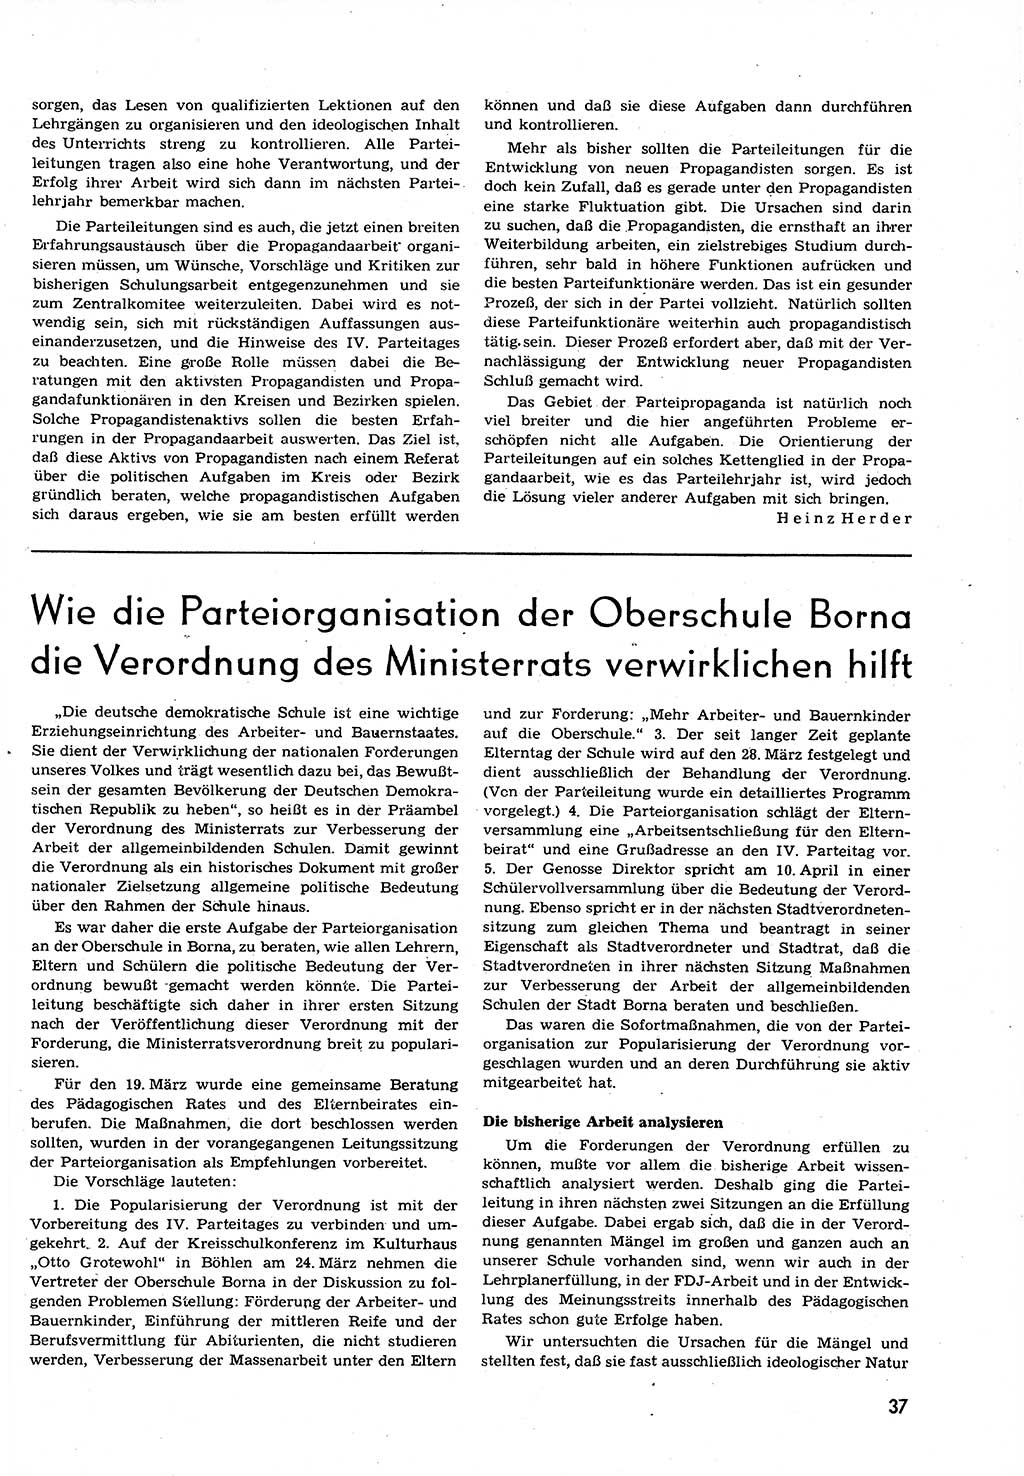 Neuer Weg (NW), Organ des Zentralkomitees (ZK) der SED (Sozialistische Einheitspartei Deutschlands) für alle Parteiarbeiter, 9. Jahrgang [Deutsche Demokratische Republik (DDR)] 1954, Heft 9/37 (NW ZK SED DDR 1954, H. 9/37)